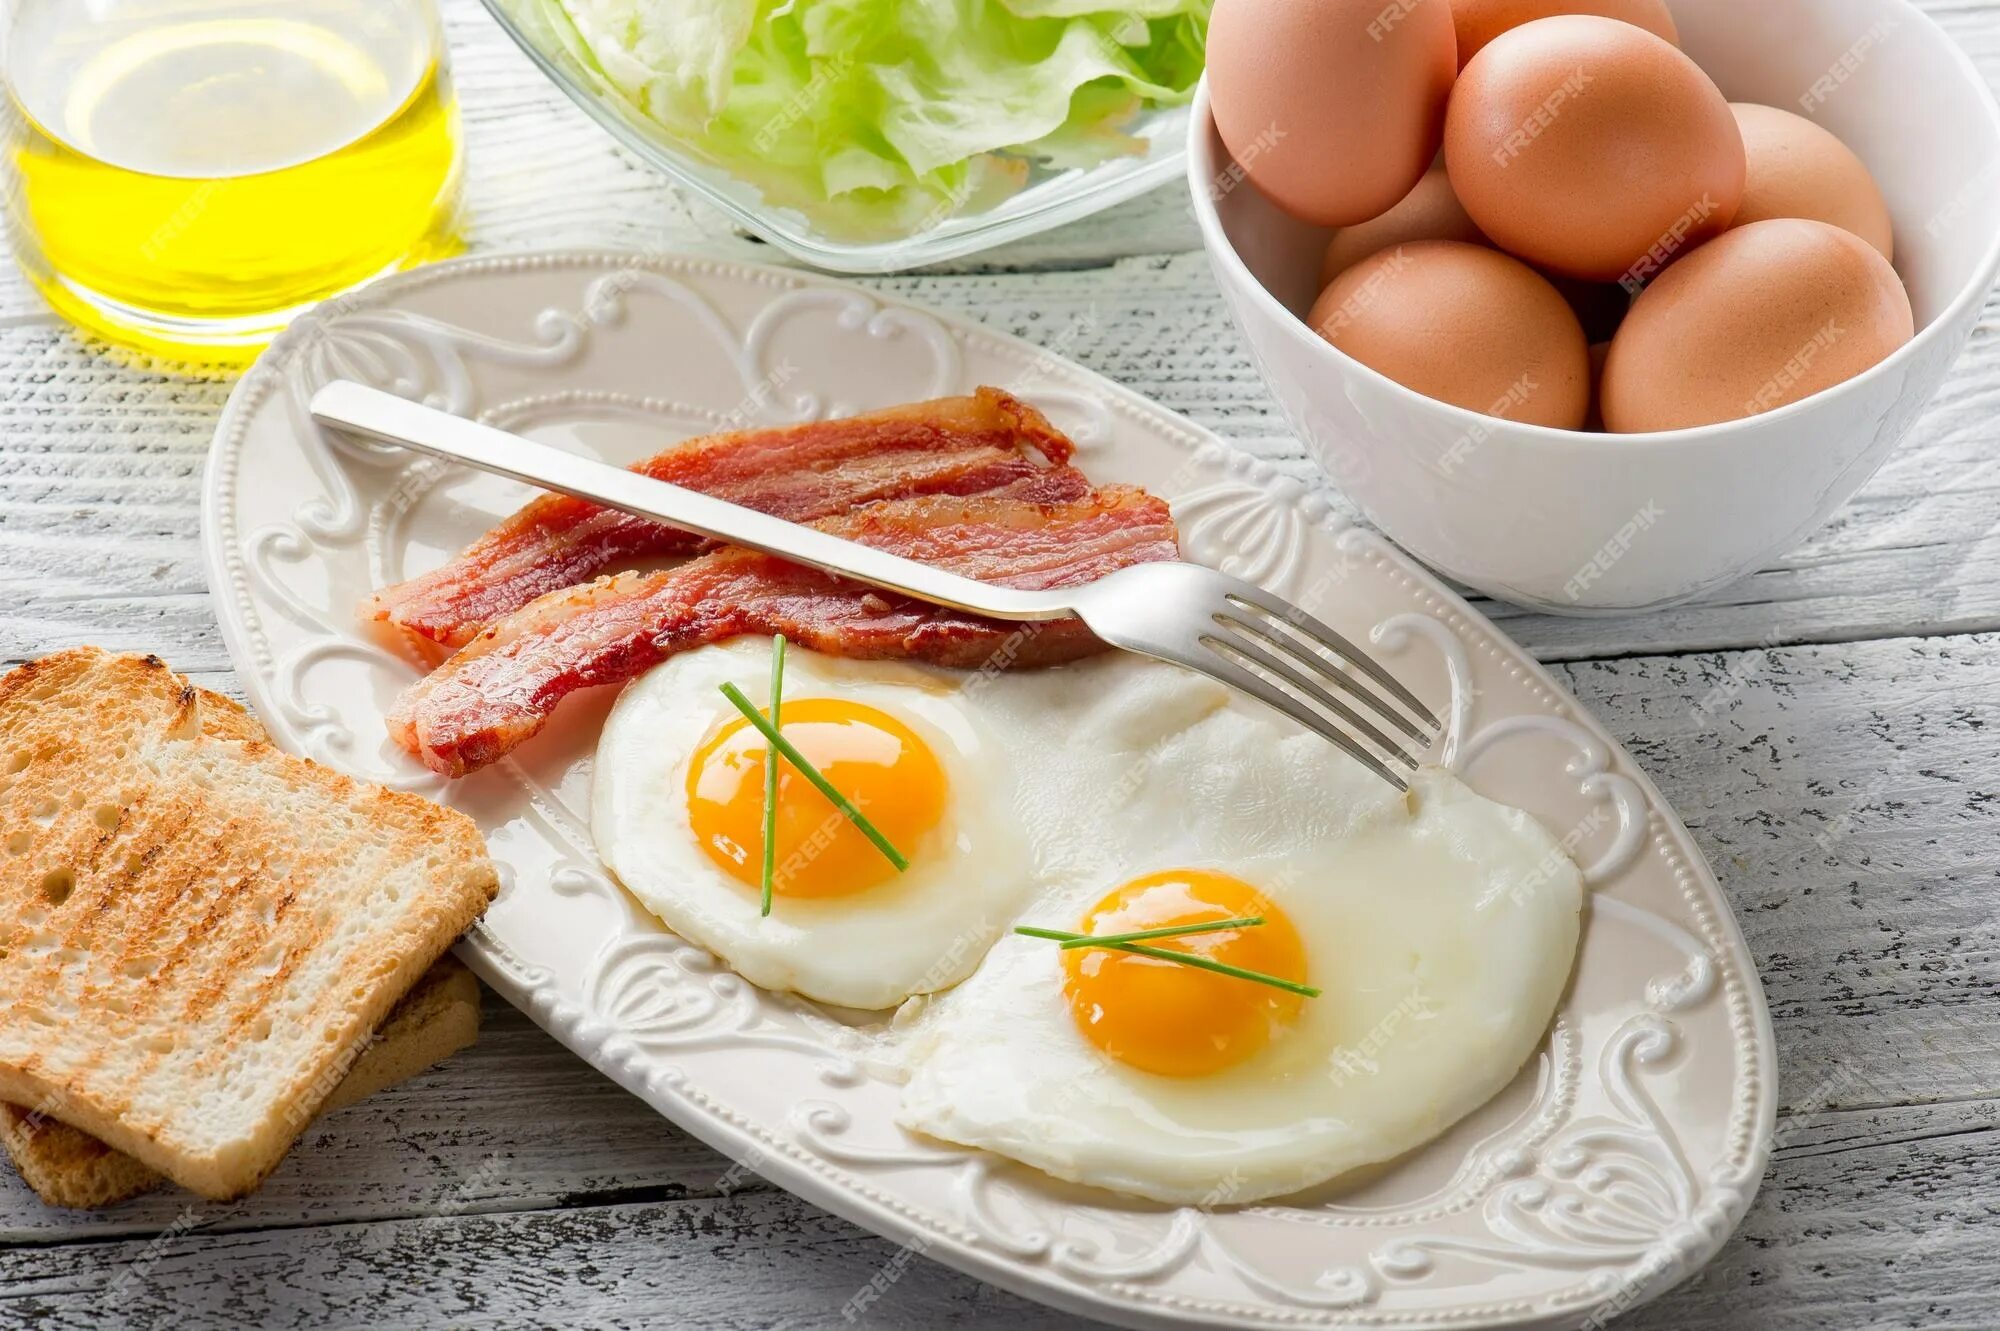 Яичница. Яичница для завтрака. Завтрак с вареными яйцами. Завтрак яичница с беконом. Можно есть яйца каждый день на завтрак